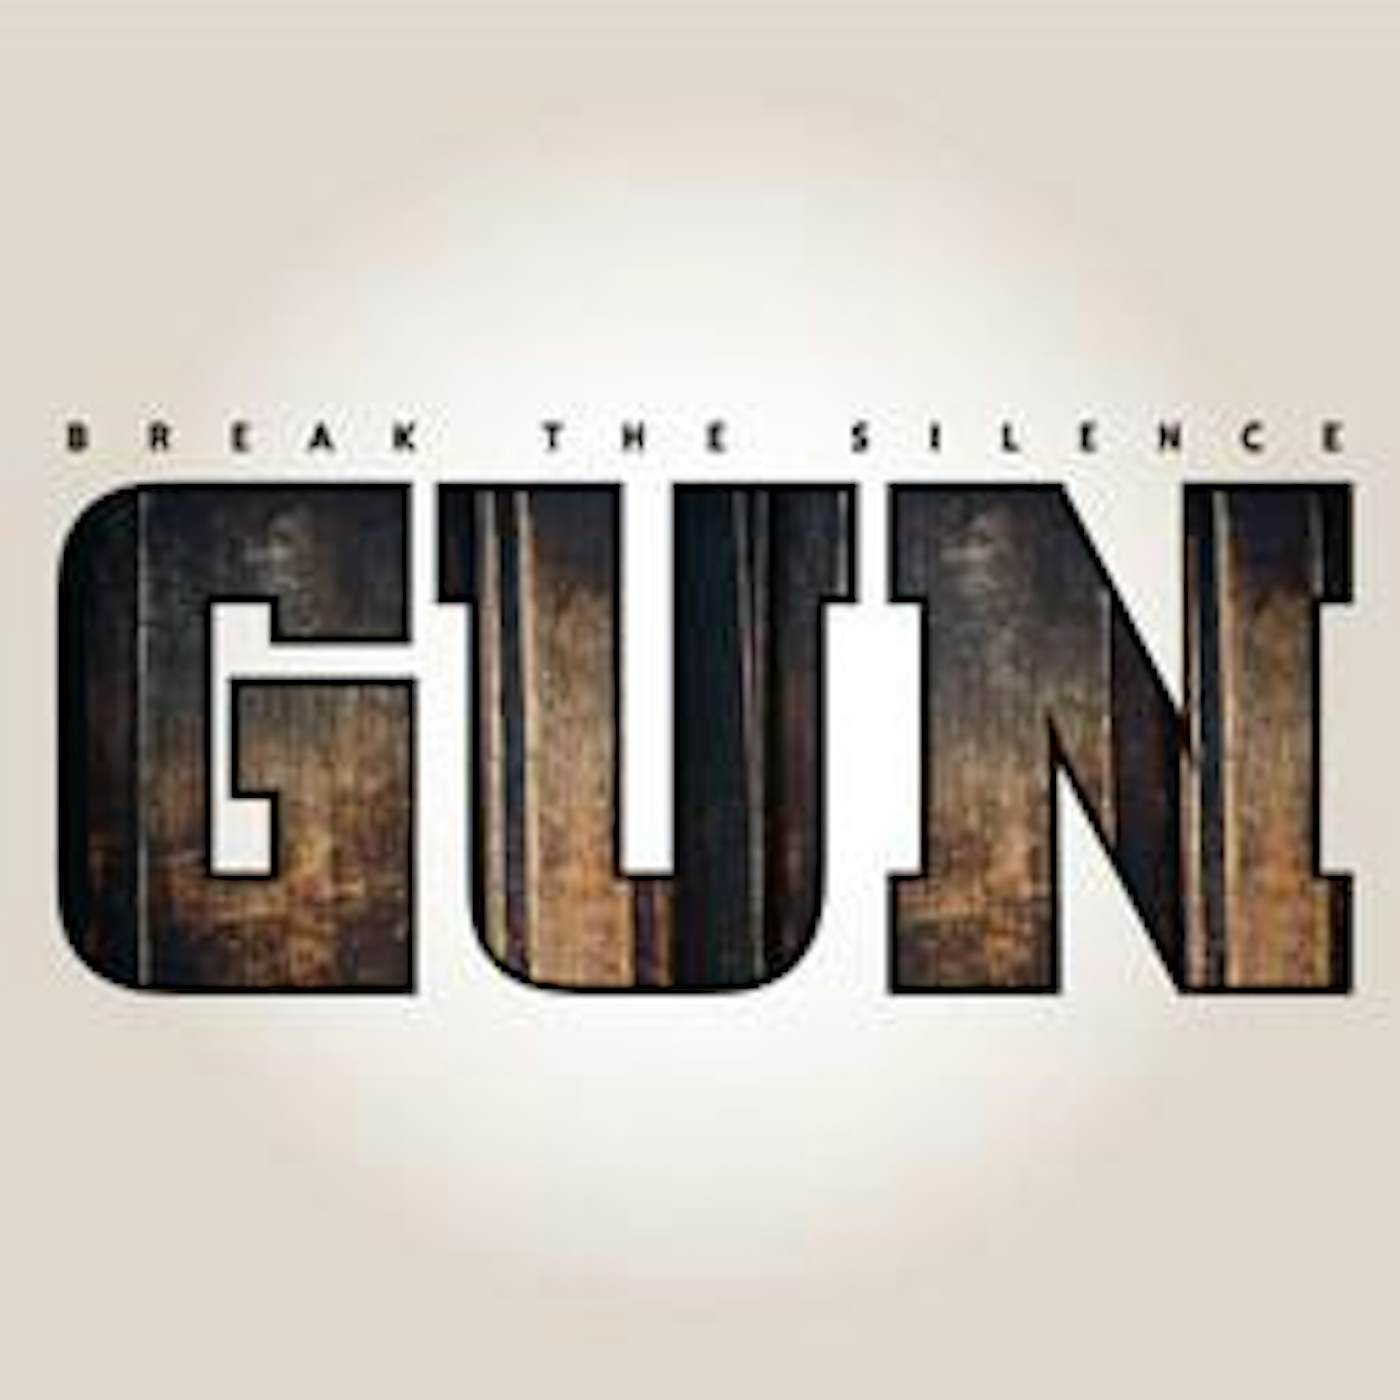 Gun BREAK THE SILENCE CD